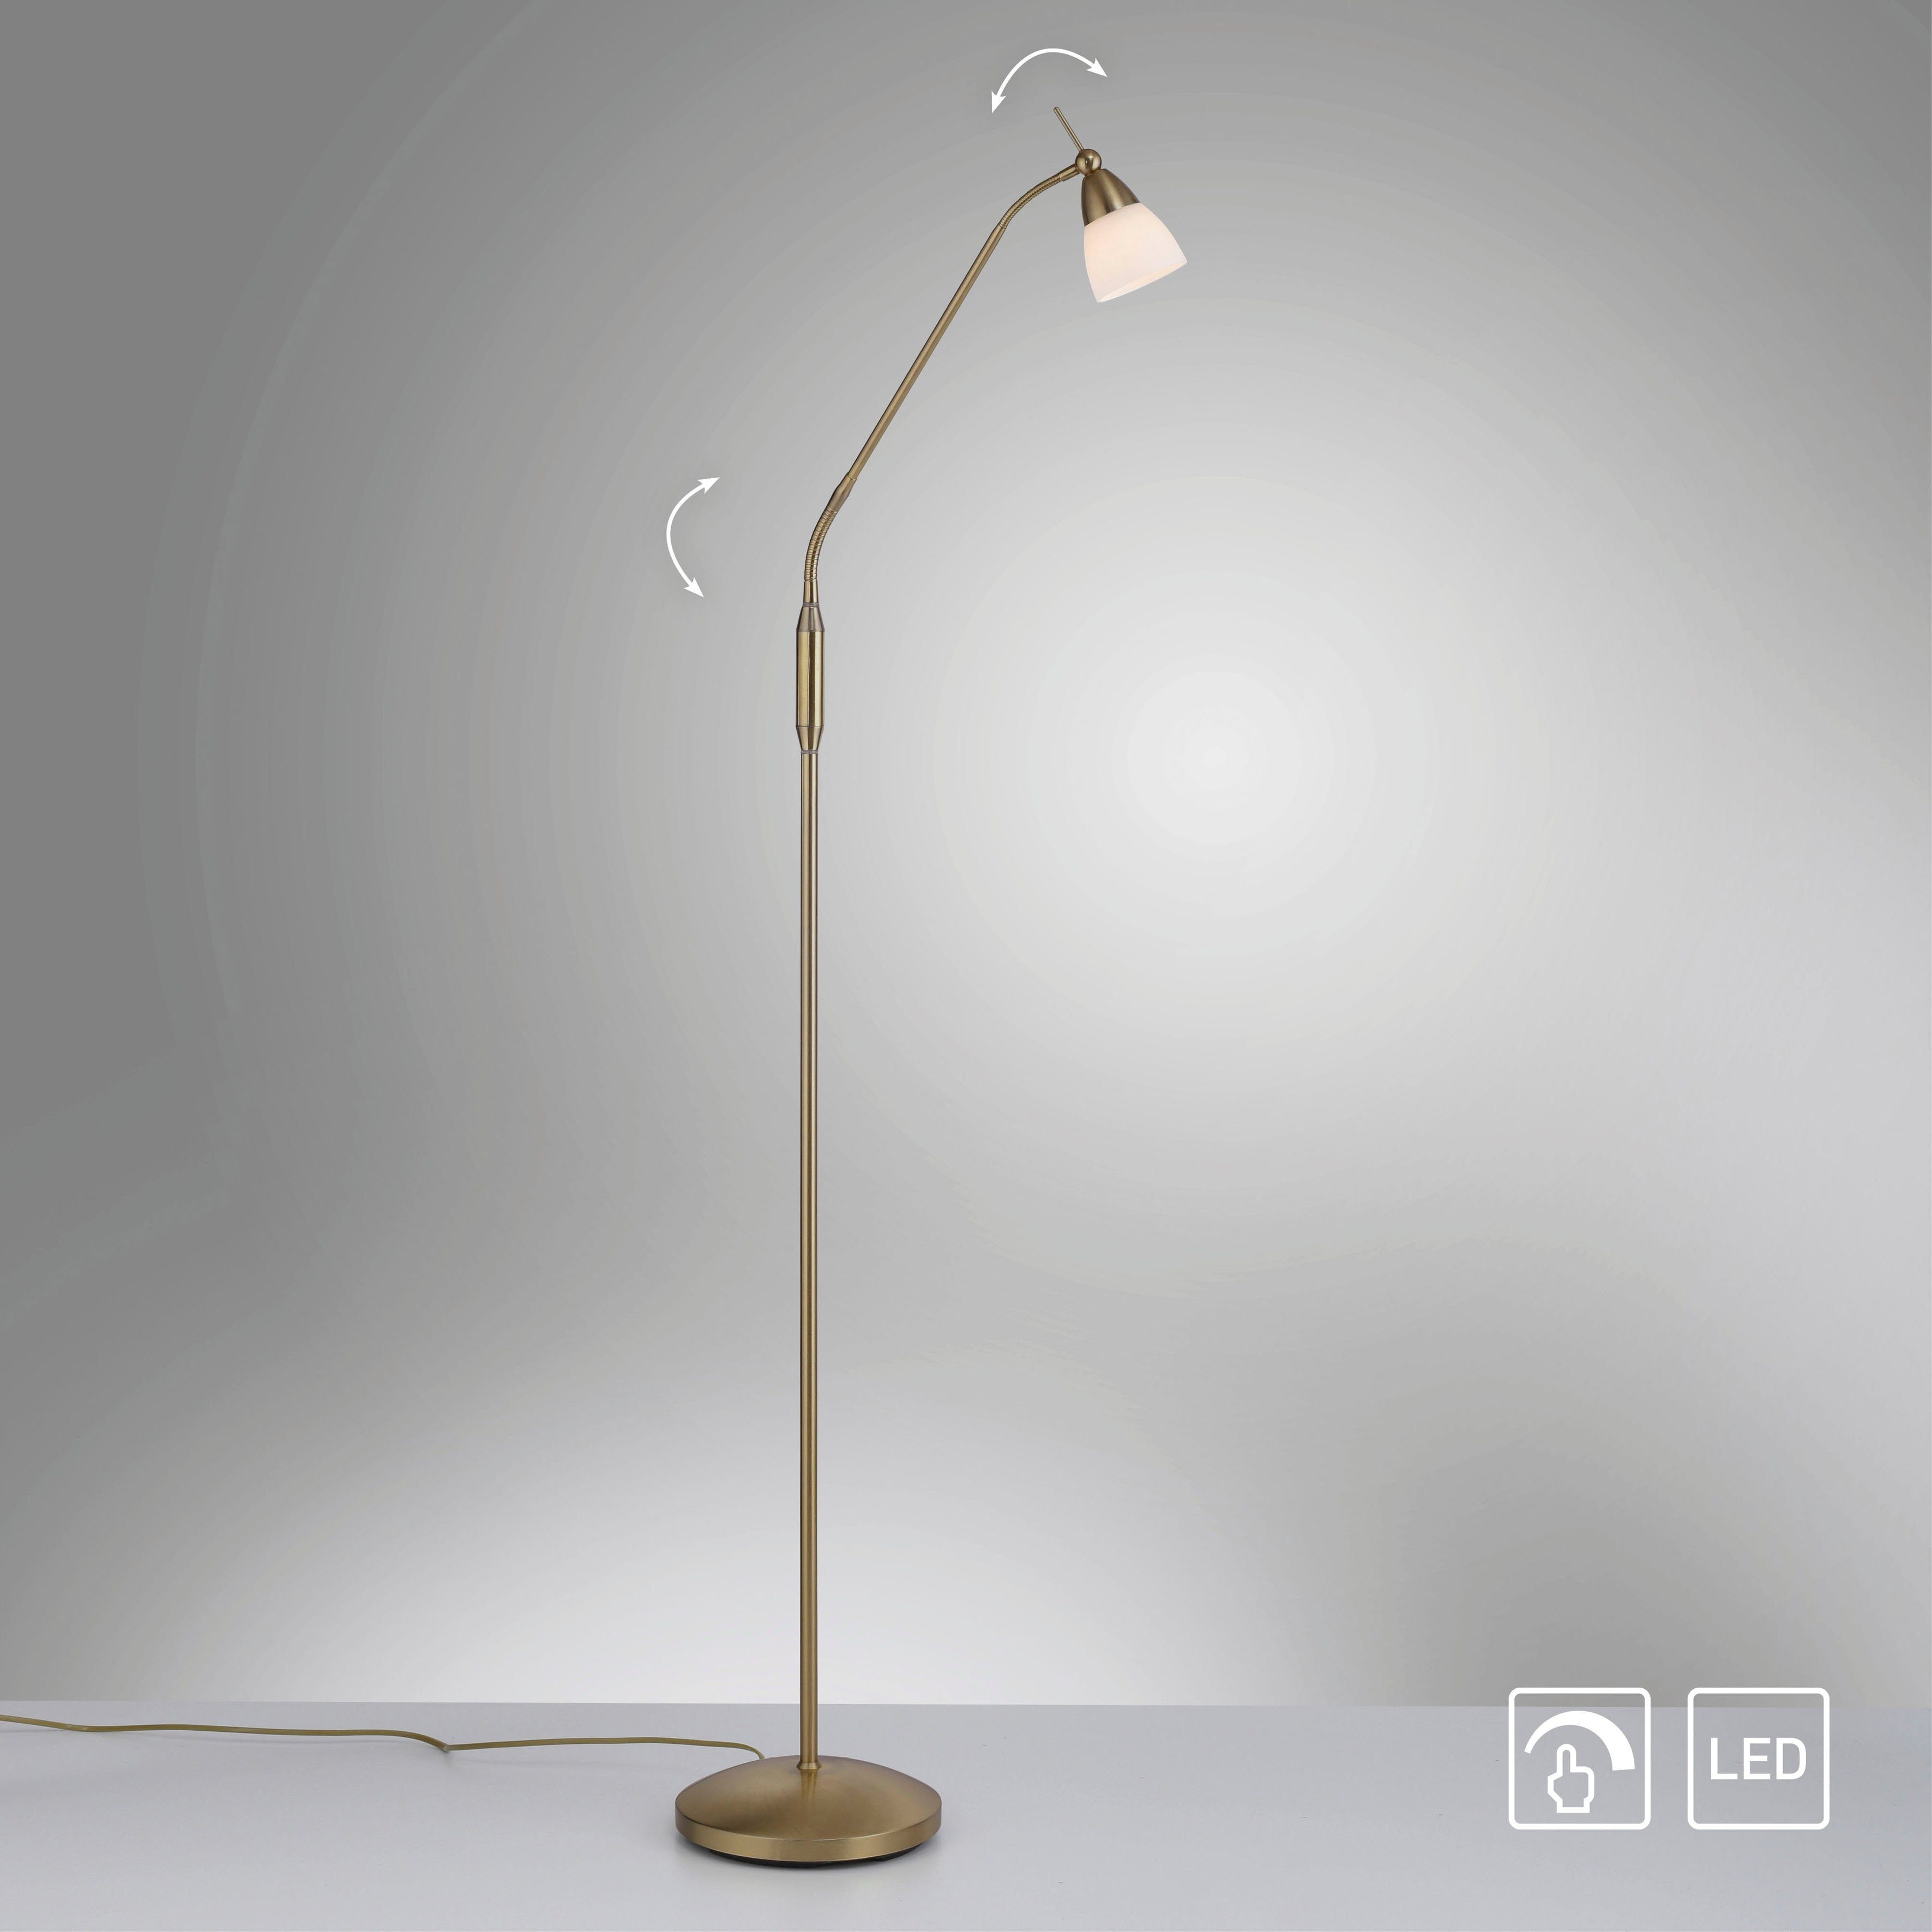 Paul Neuhaus LED Lampen online kaufen | OTTO